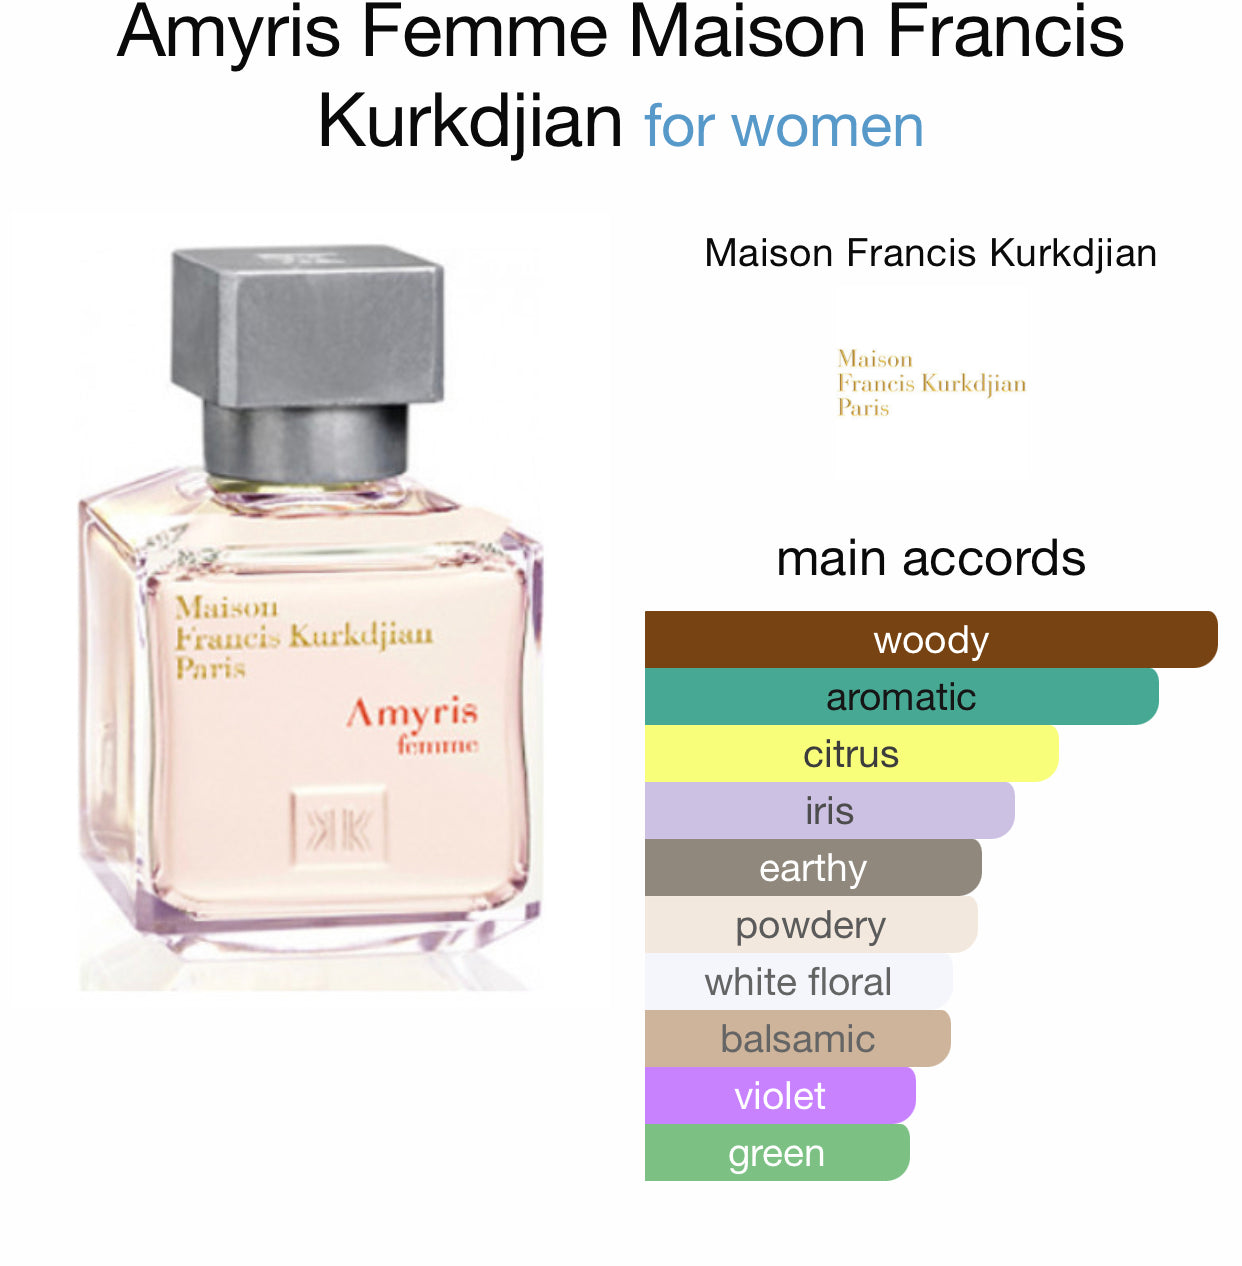 Inspired by Amyris Femme Eau de Parfum